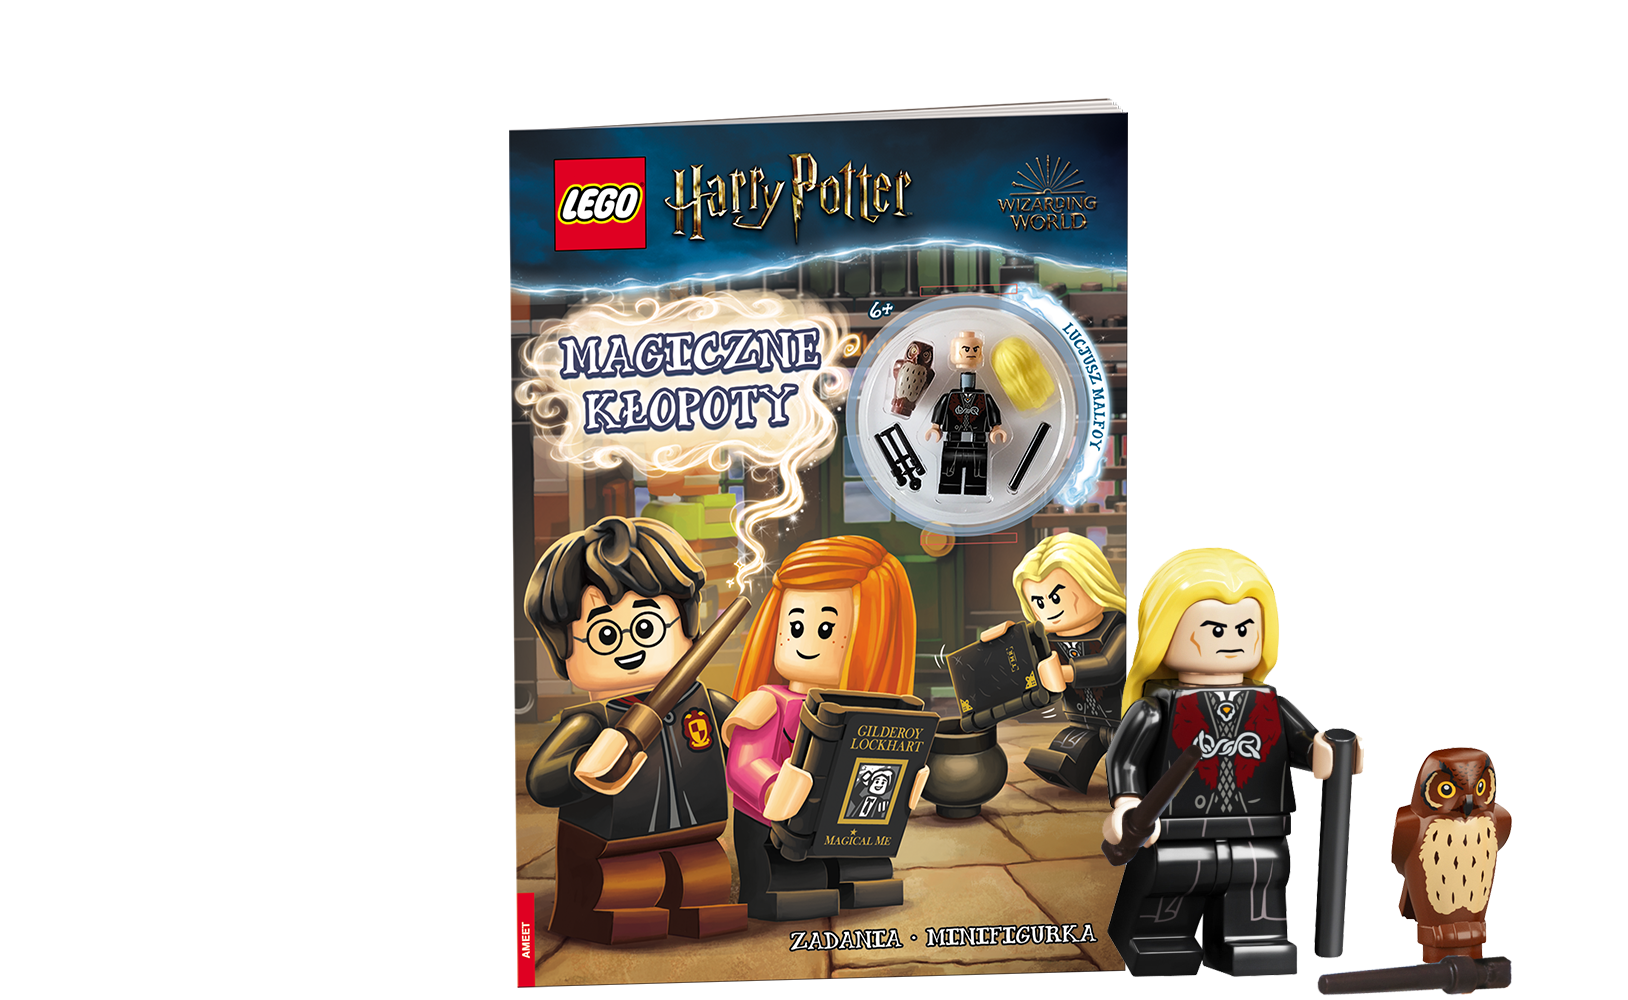 Lego Harry Potter Magiczne kłopoty 